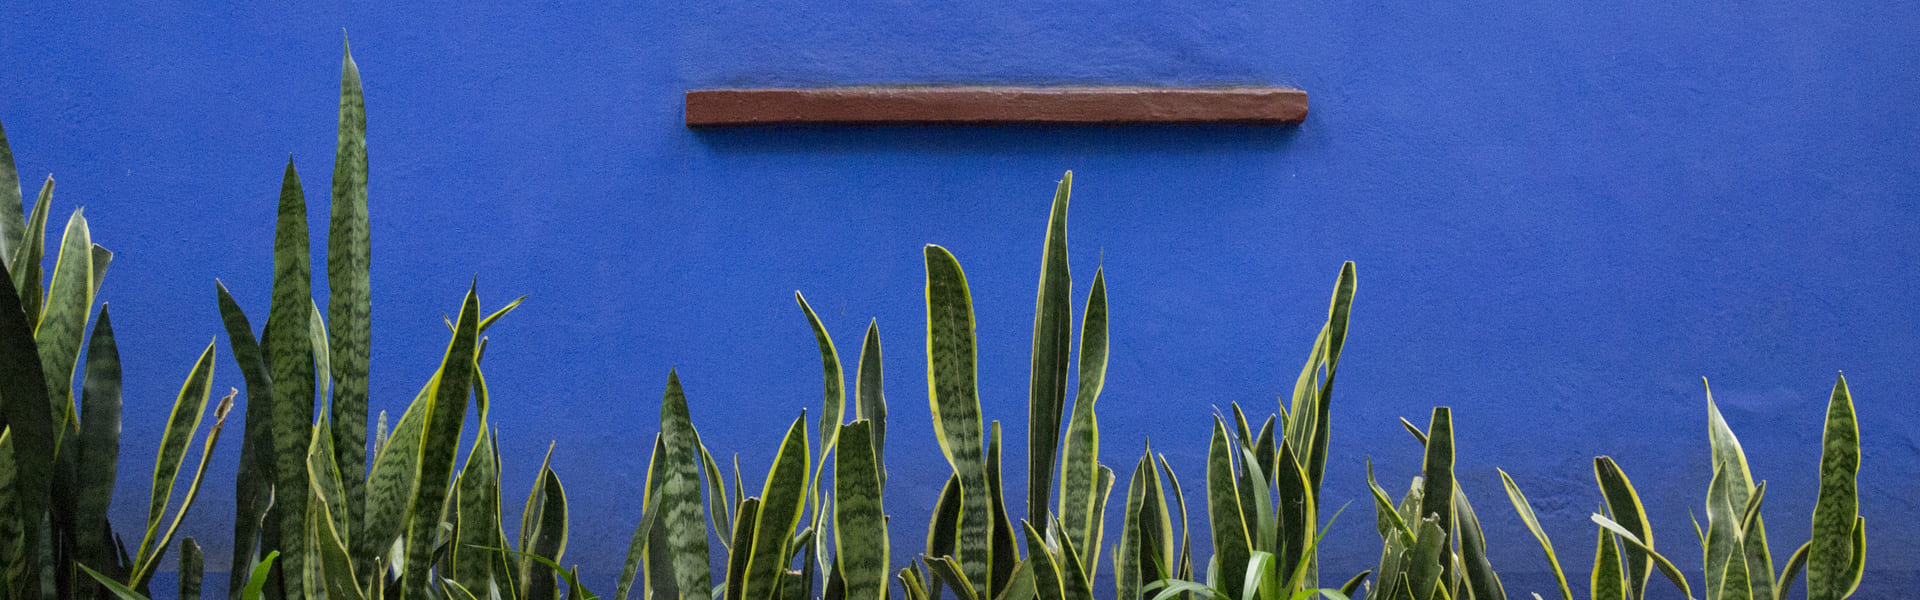 Una tarde por Coyoacán y visita a la casa museo de Frida Kahlo